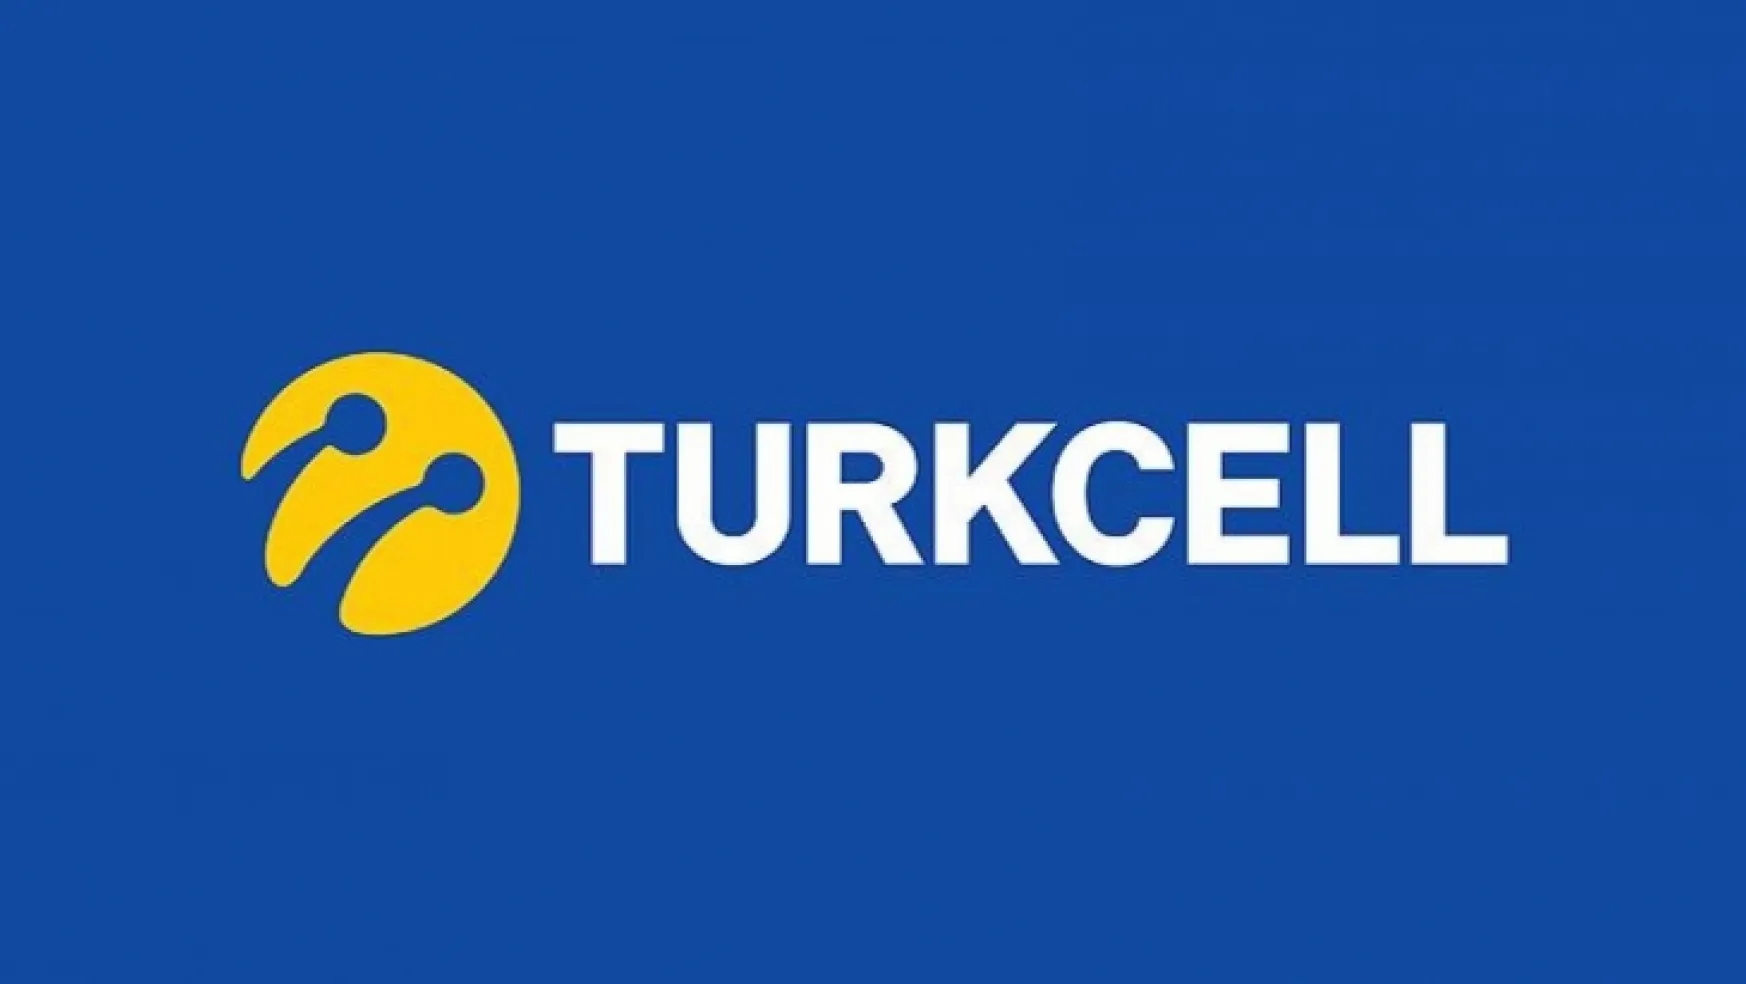 Turkcell'in inovatif çözümlerine iki uluslararası ödül